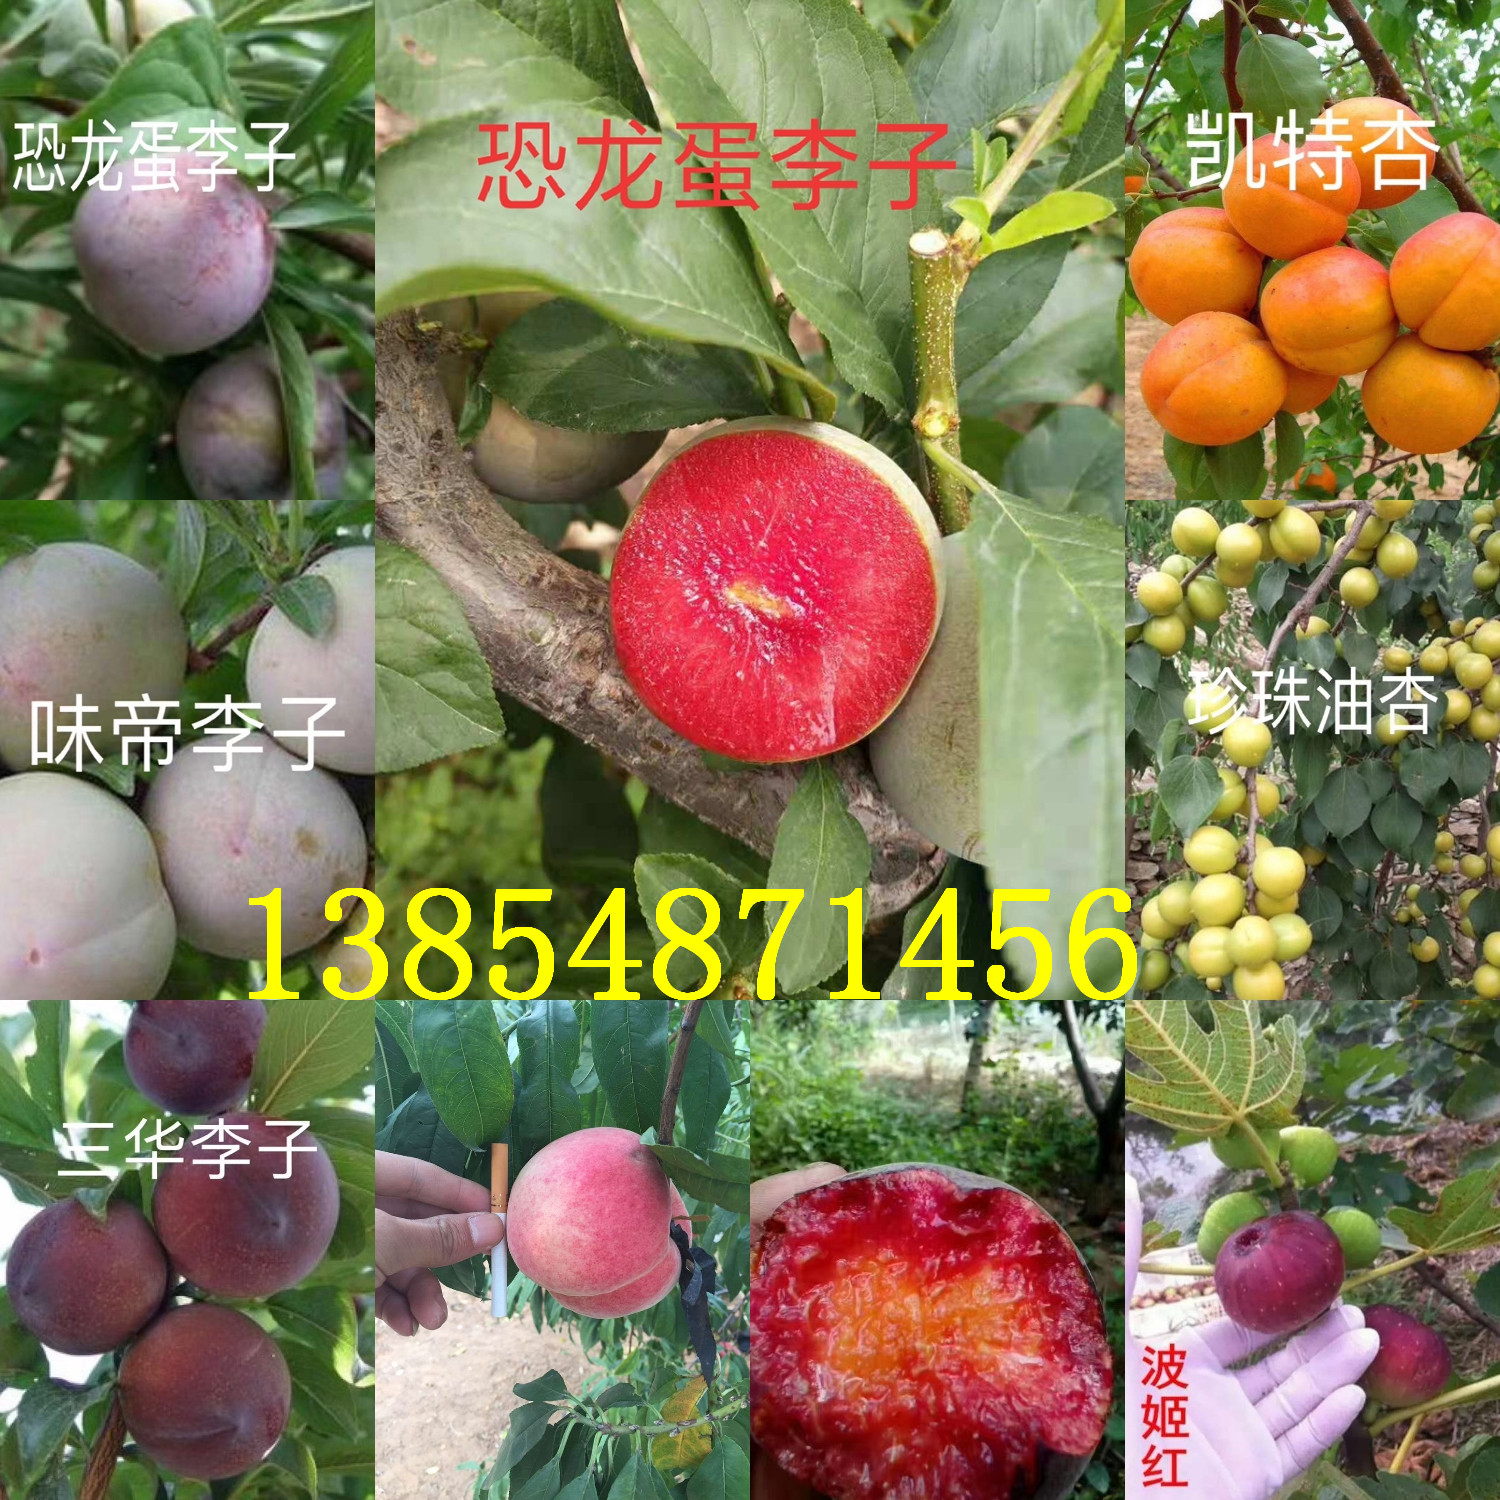 浙江杭州西梅李子树苗基地卖啥价格、果树苗哪里有售